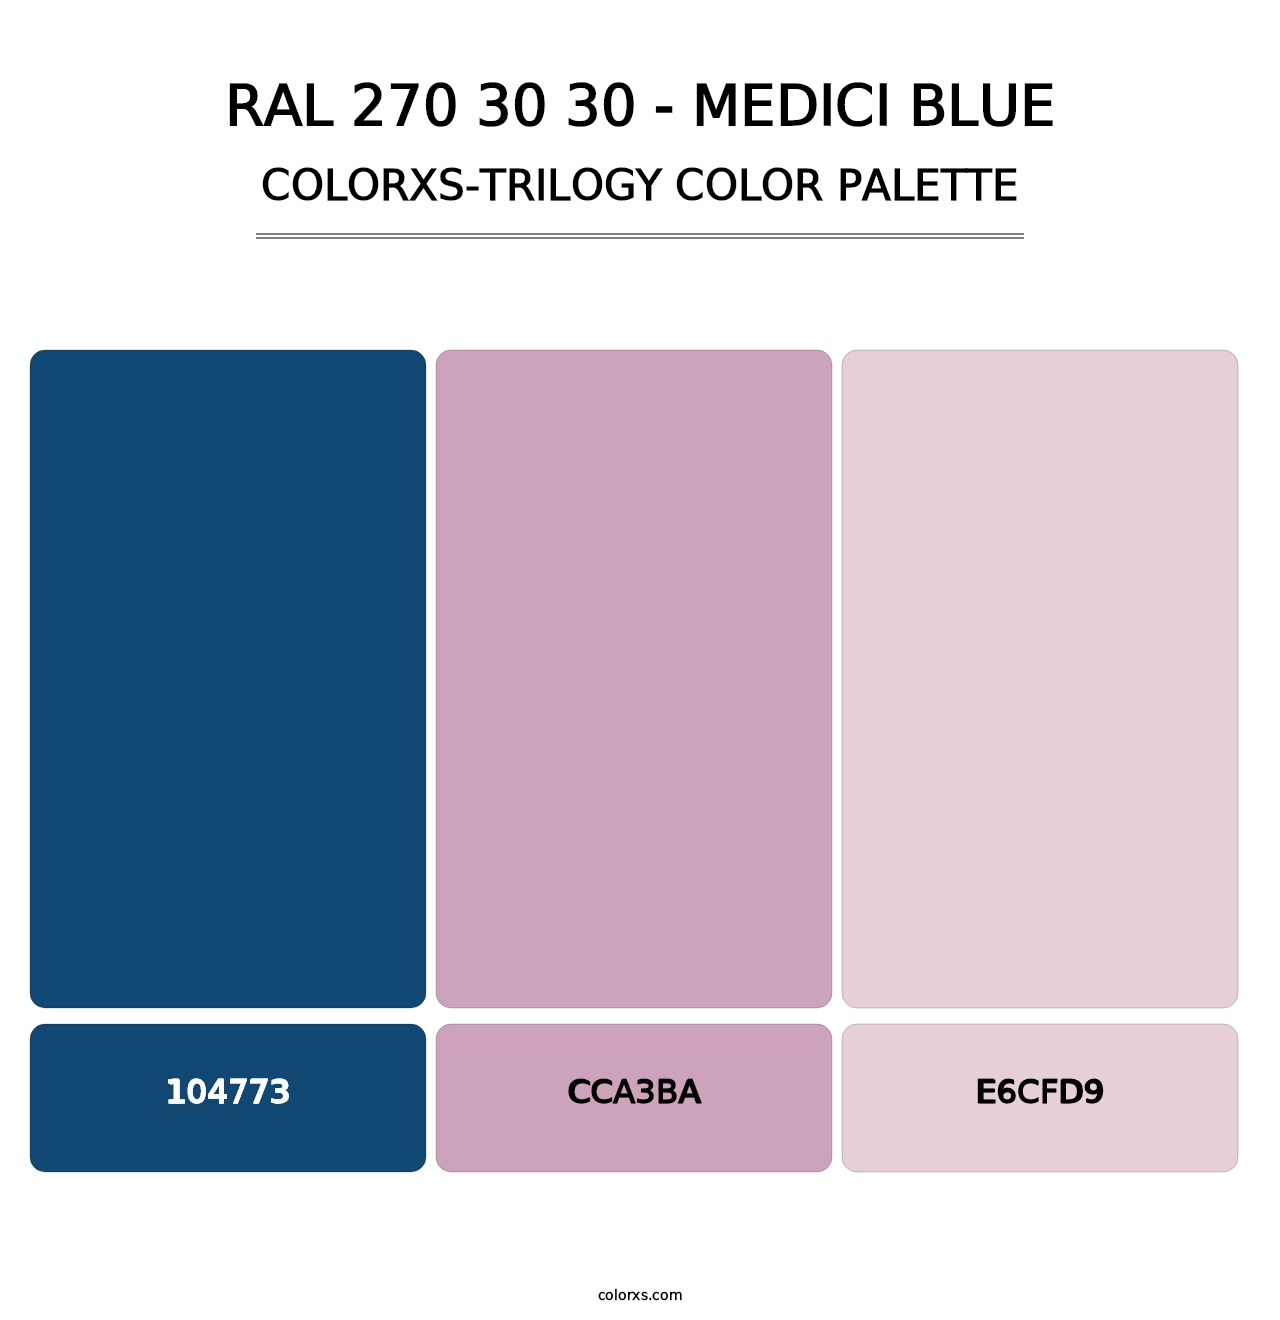 RAL 270 30 30 - Medici Blue - Colorxs Trilogy Palette